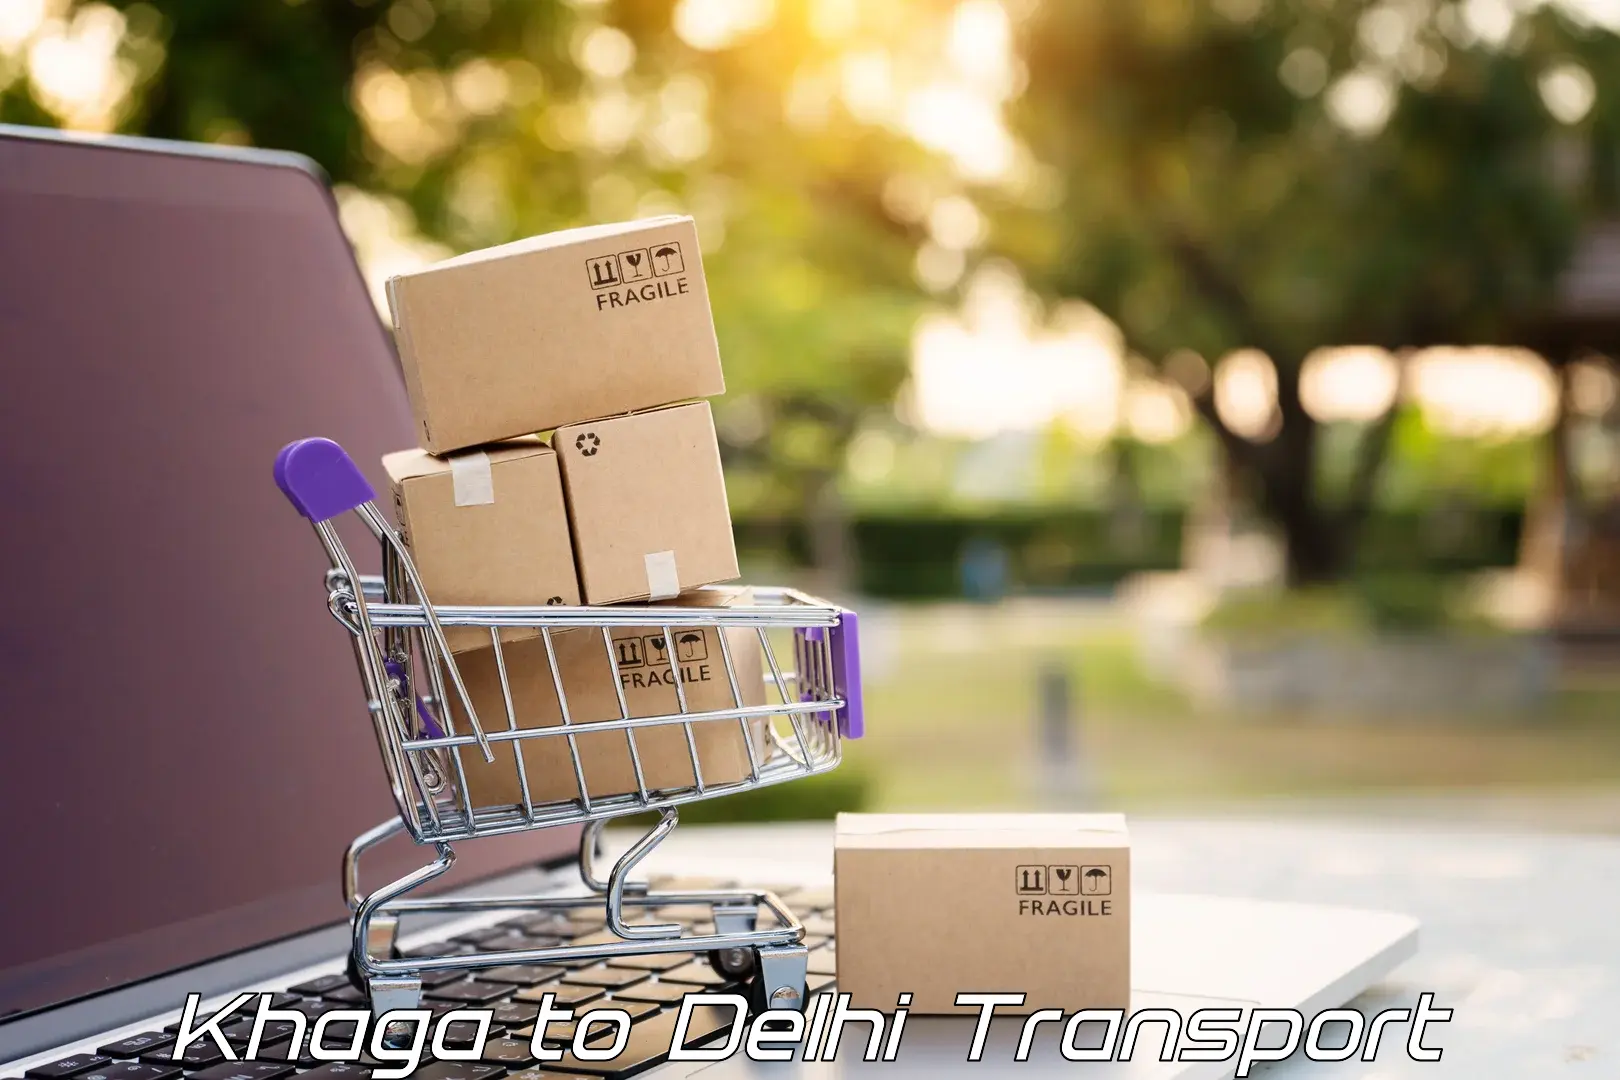 Daily transport service in Khaga to Jamia Millia Islamia New Delhi